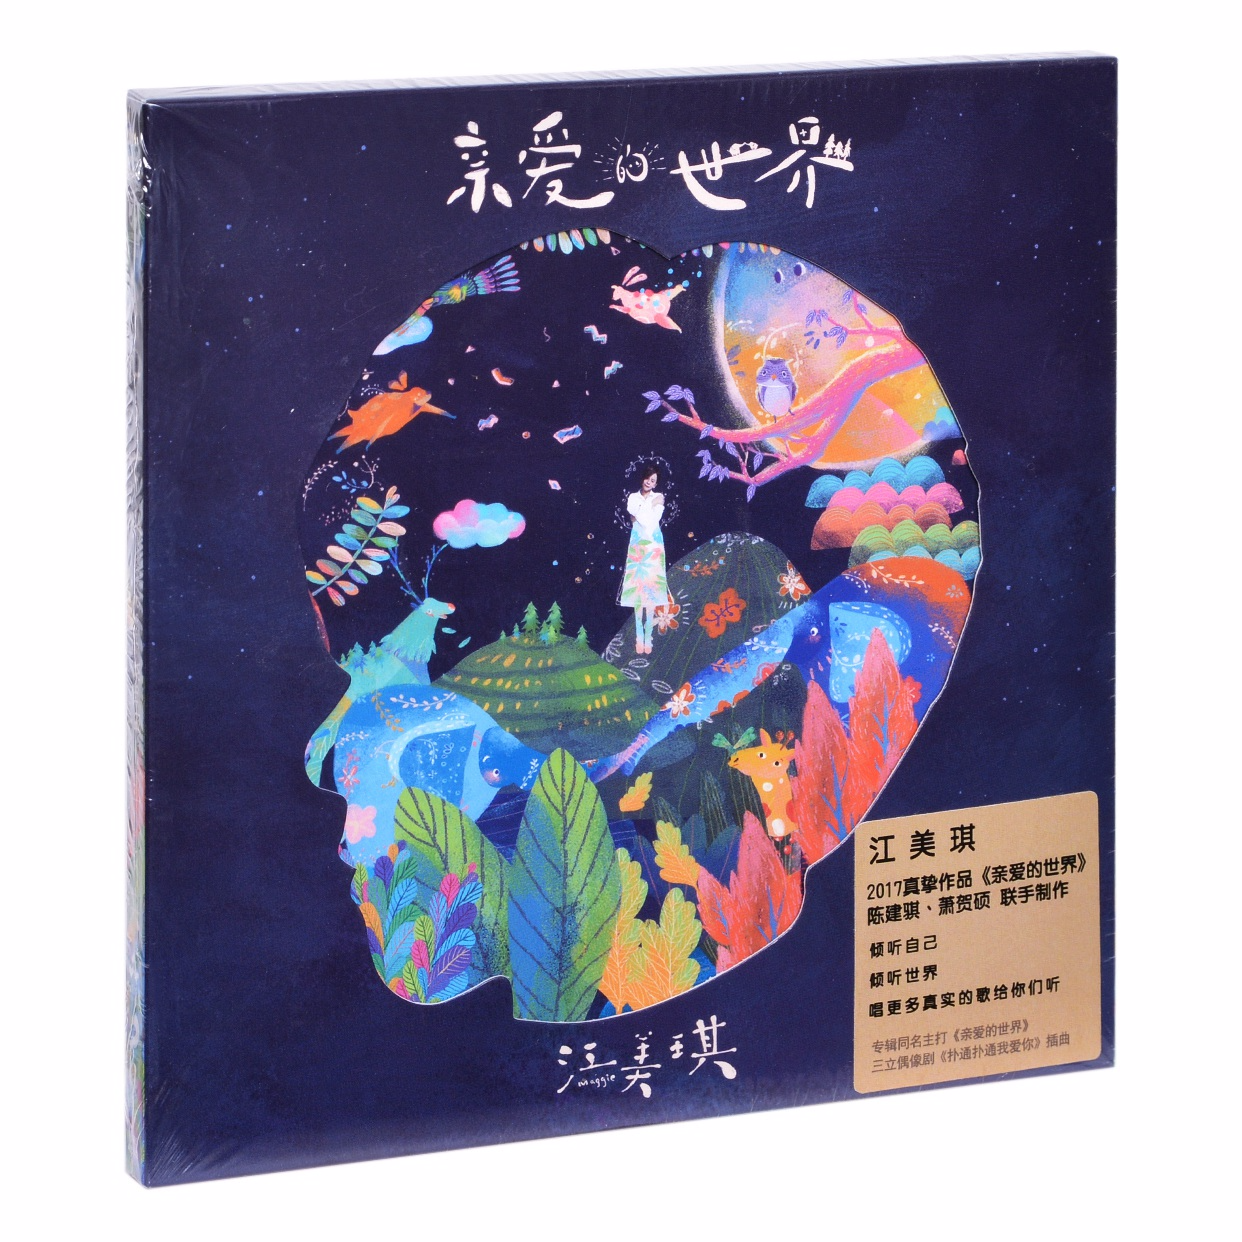 正版江美琪 亲爱的世界 专辑唱片CD+手绘动物书签